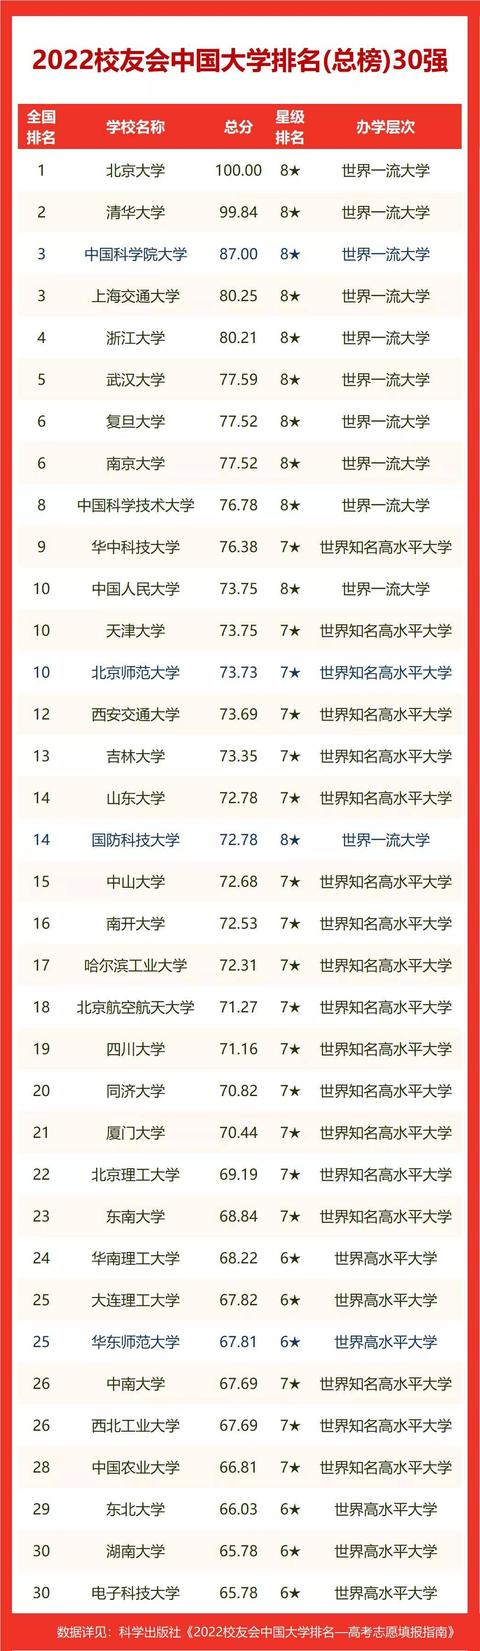 浙江大学排名2022最新排名(警察学院300-400分)